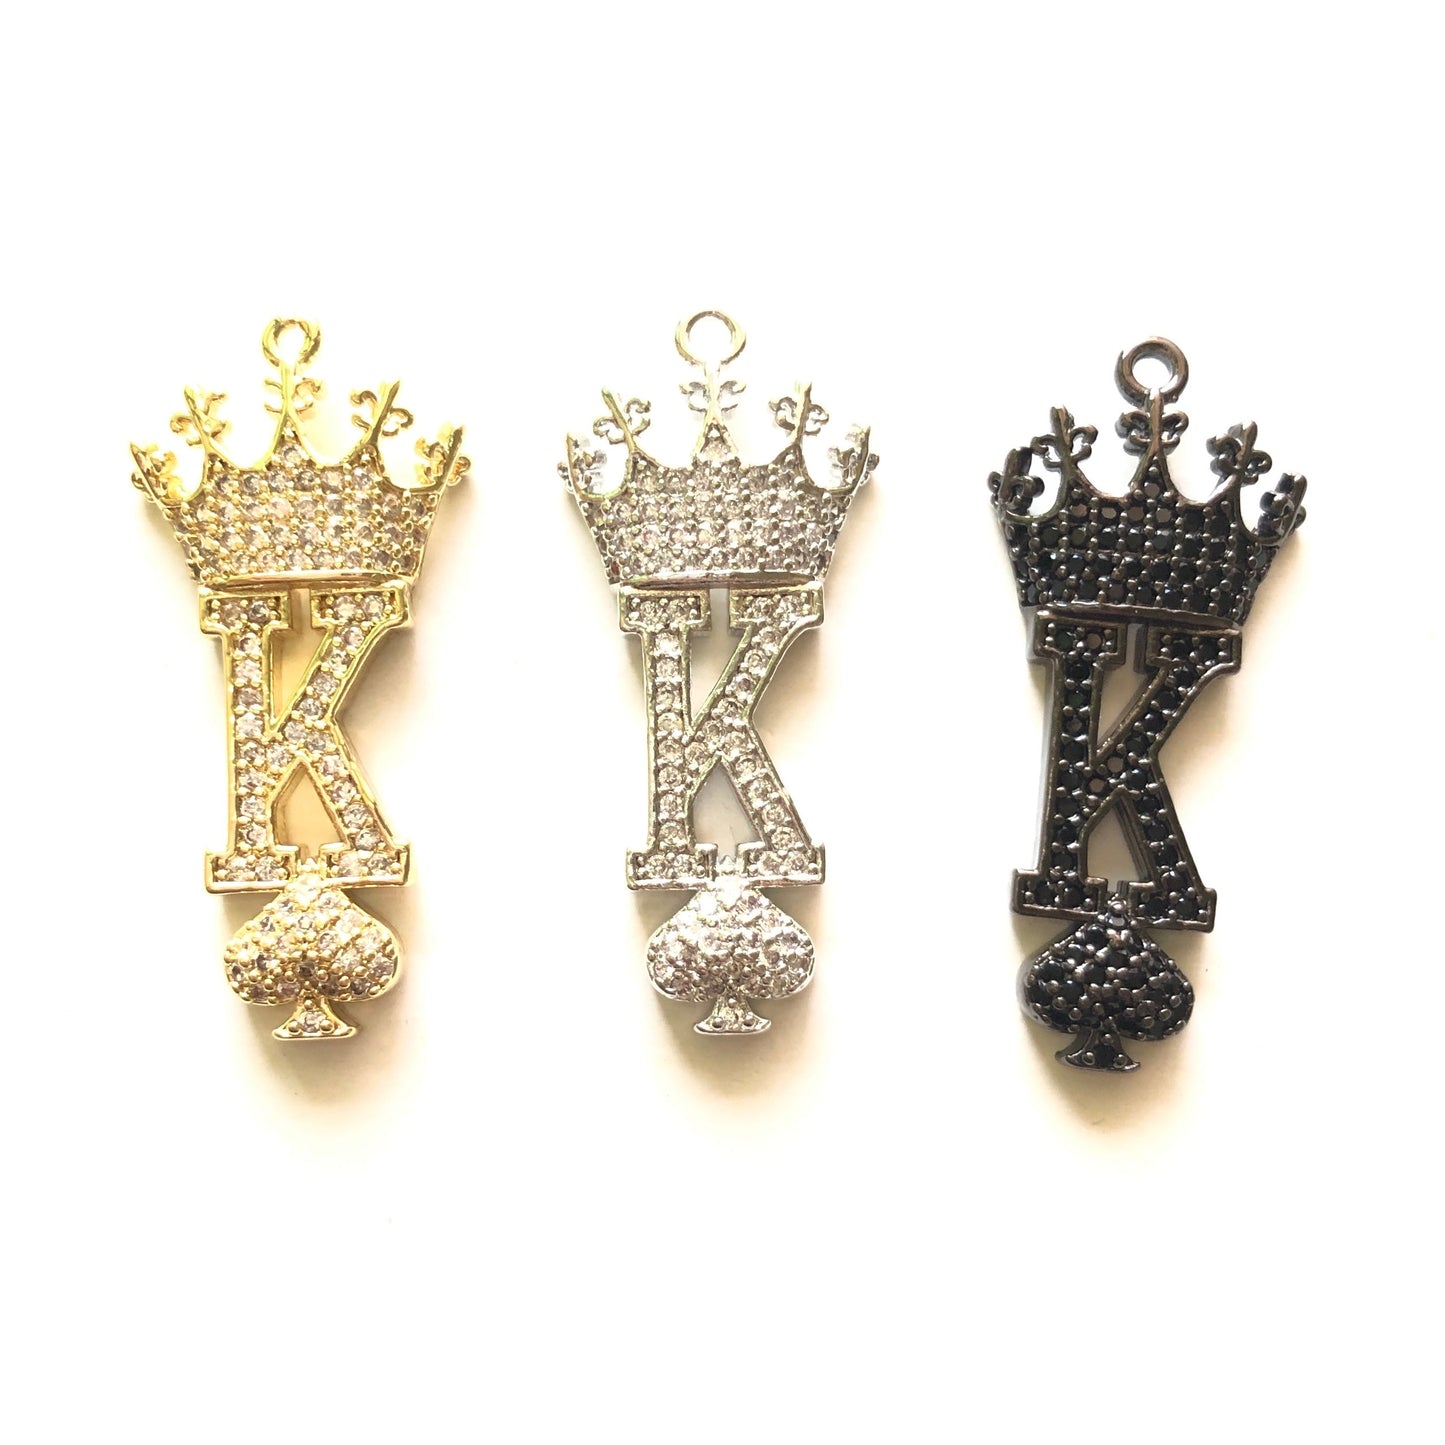 10pcs/lot 34*15mm CZ Paved King of Spades Charms CZ Paved Charms Queen Charms Words & Quotes Charms Beads Beyond